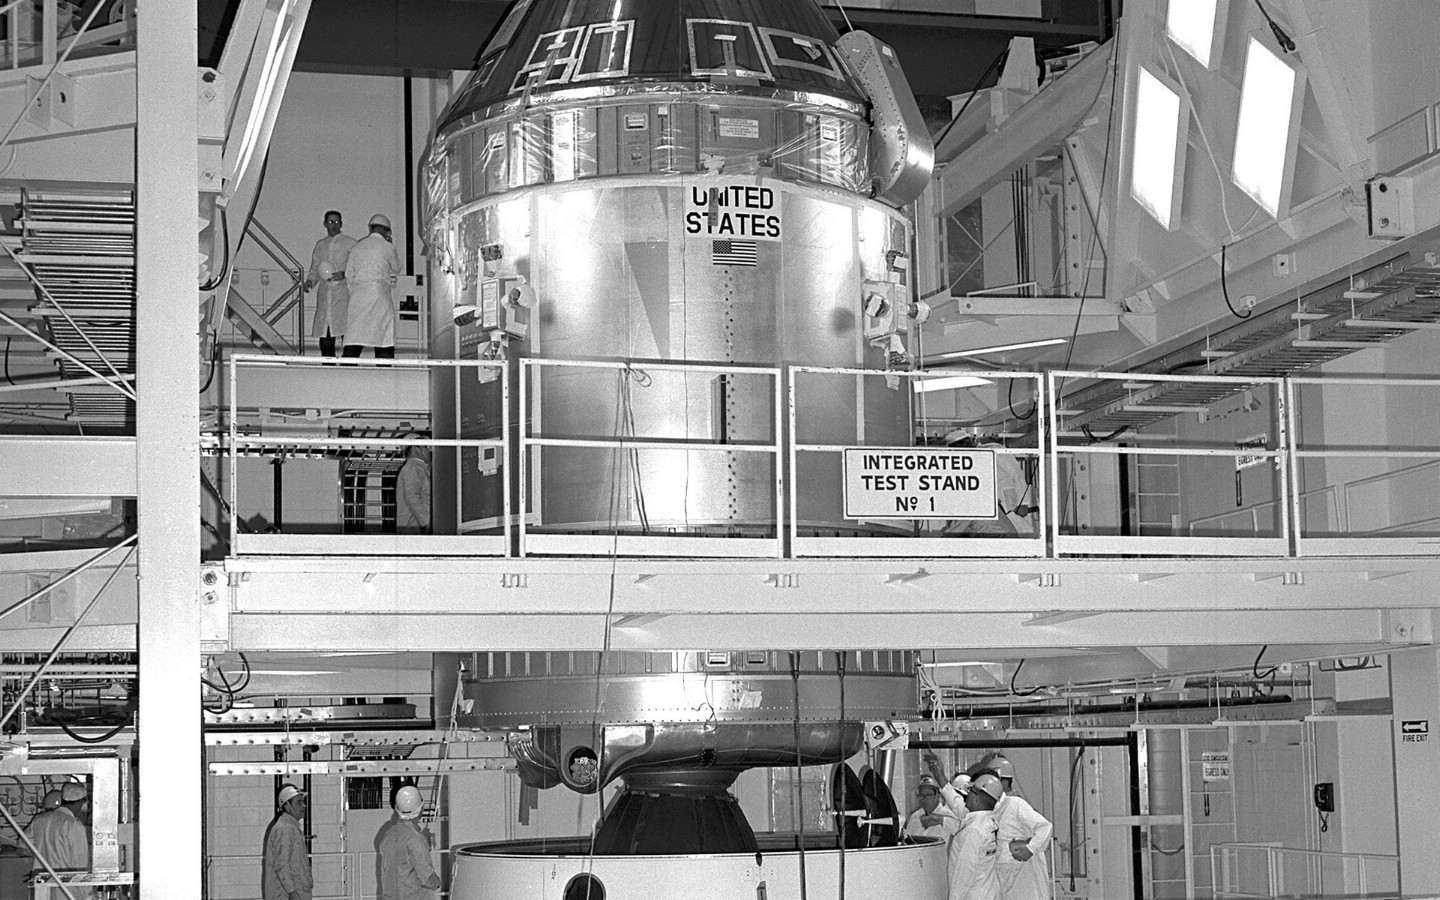 壁纸1440x900阿波罗11珍贵照片壁纸壁纸 阿波罗11珍贵照片壁纸壁纸 阿波罗11珍贵照片壁纸图片 阿波罗11珍贵照片壁纸素材 其他壁纸 其他图库 其他图片素材桌面壁纸